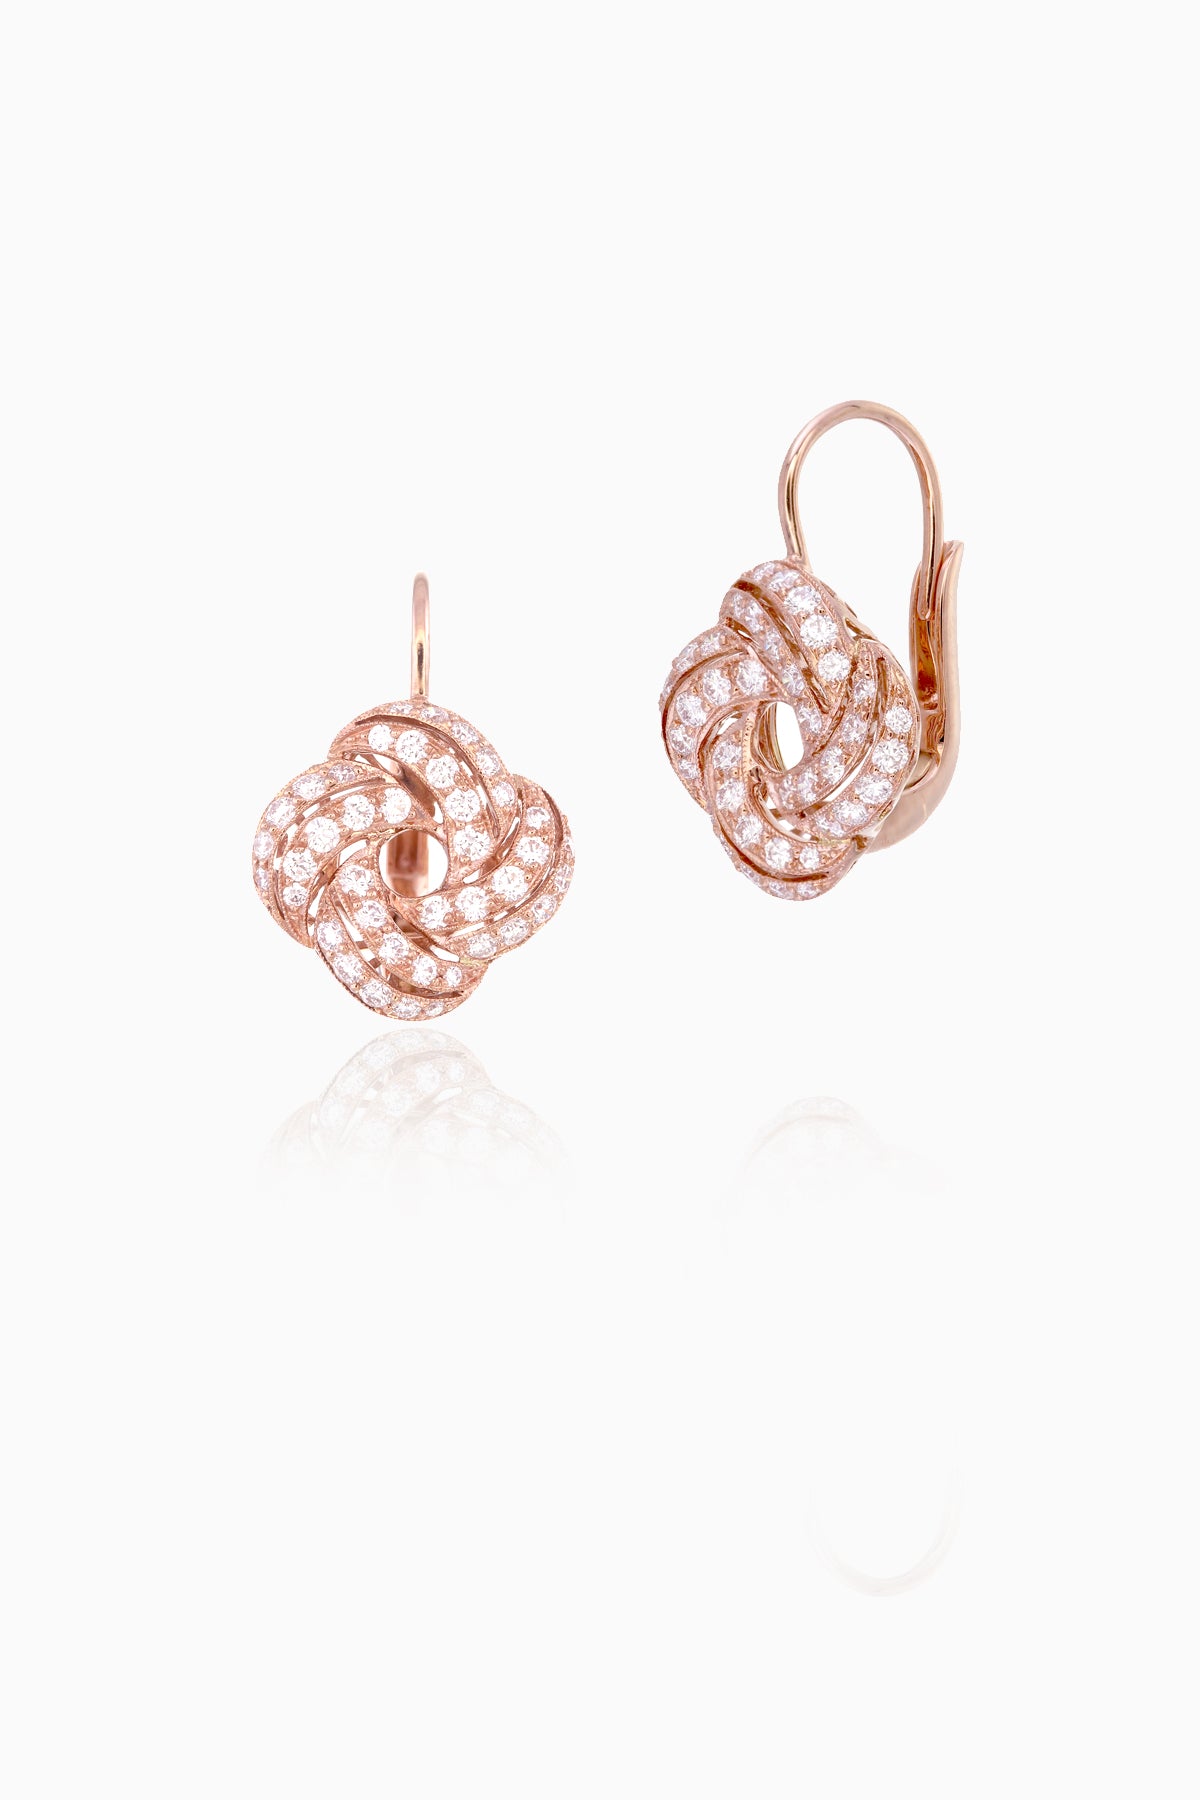 Nova Earrings in Rose Gold